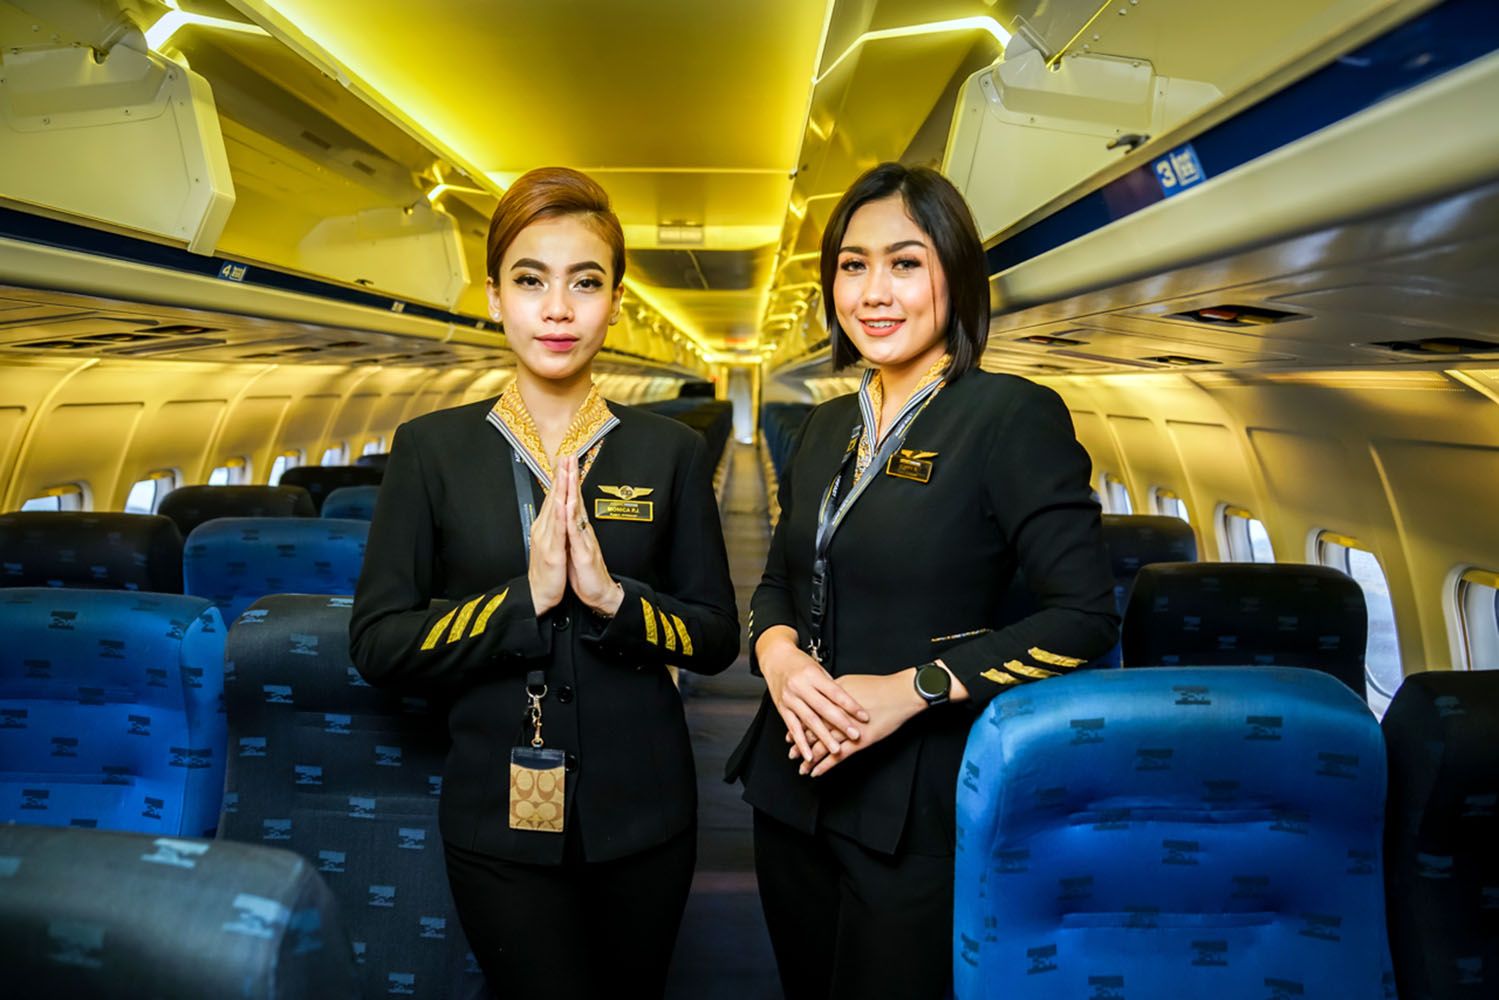 Airfast Indonesia terdaftar dalam Kategori 1 oleh Otoritas Penerbangan Sipil Indonesia untuk kualitas keselamatan penerbangan. Airfast Indonesia adalah satu dari lima maskapai yang sekarang diizinkan terbang ke Eropa dari Indonesia